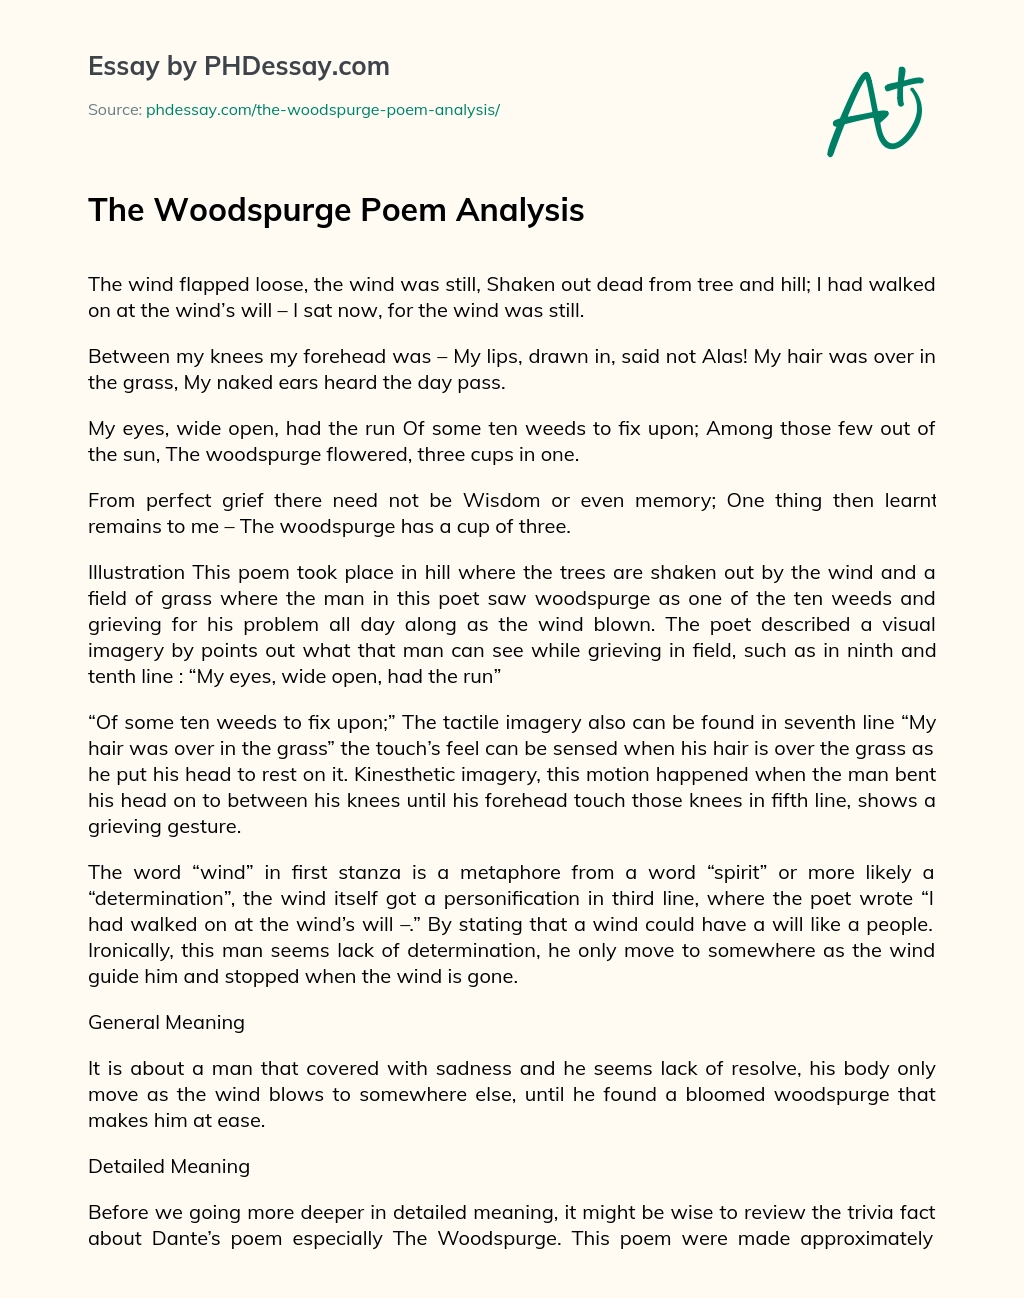 The Woodspurge Poem Analysis essay